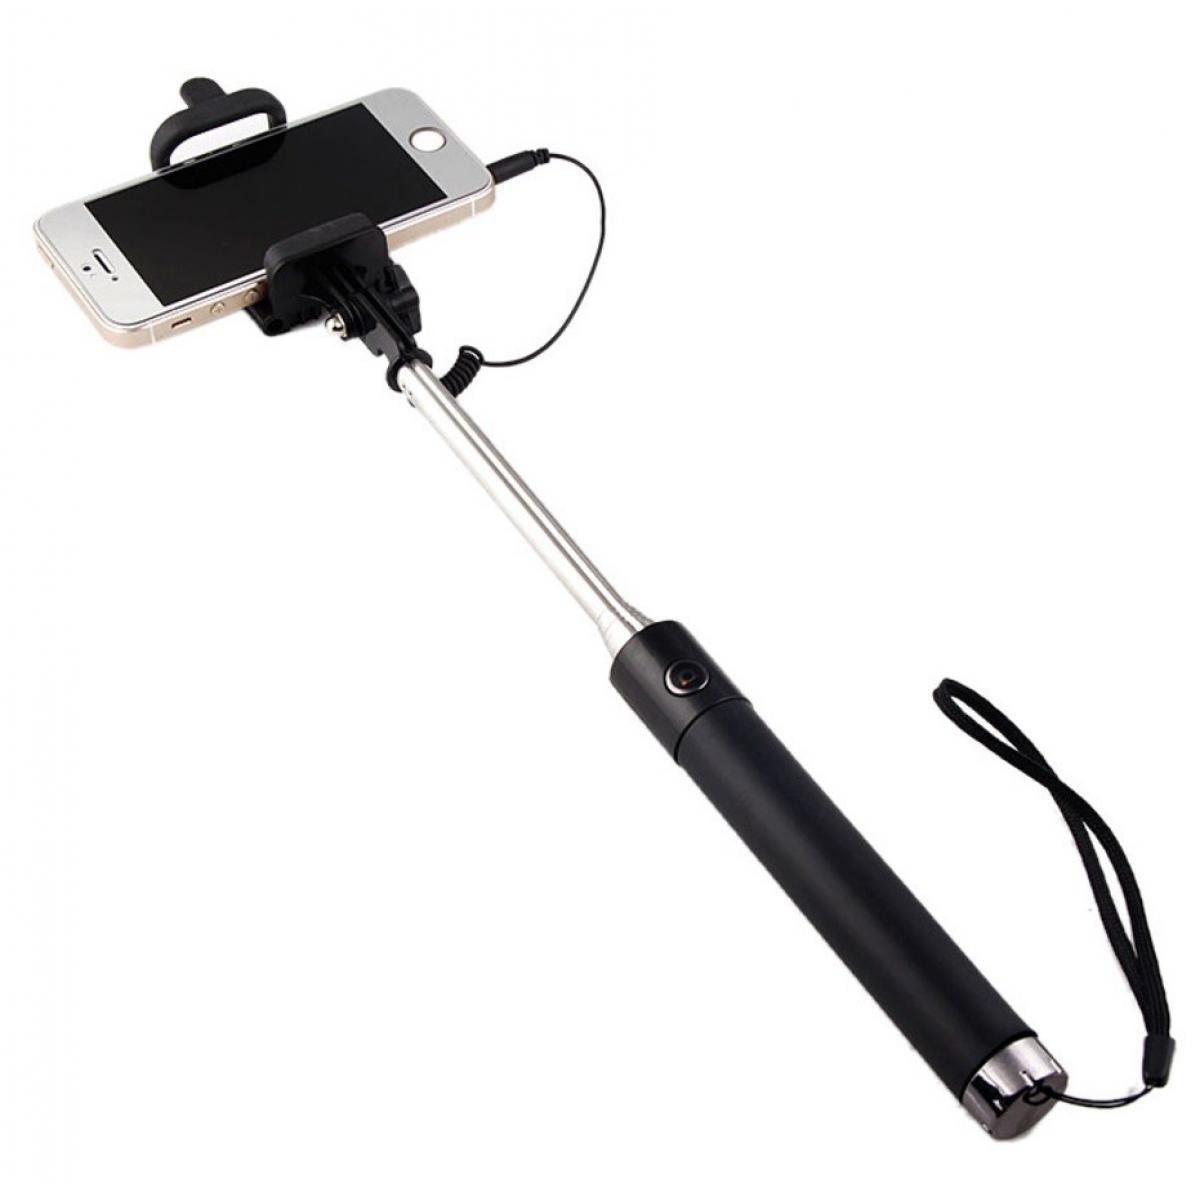 Shot - Perche Selfie Metal pour "HUAWEI P40 lite E" Smartphone avec Cable Jack Selfie Stick Android IOS Reglable Bouton Photo (NOIR) - Autres accessoires smartphone